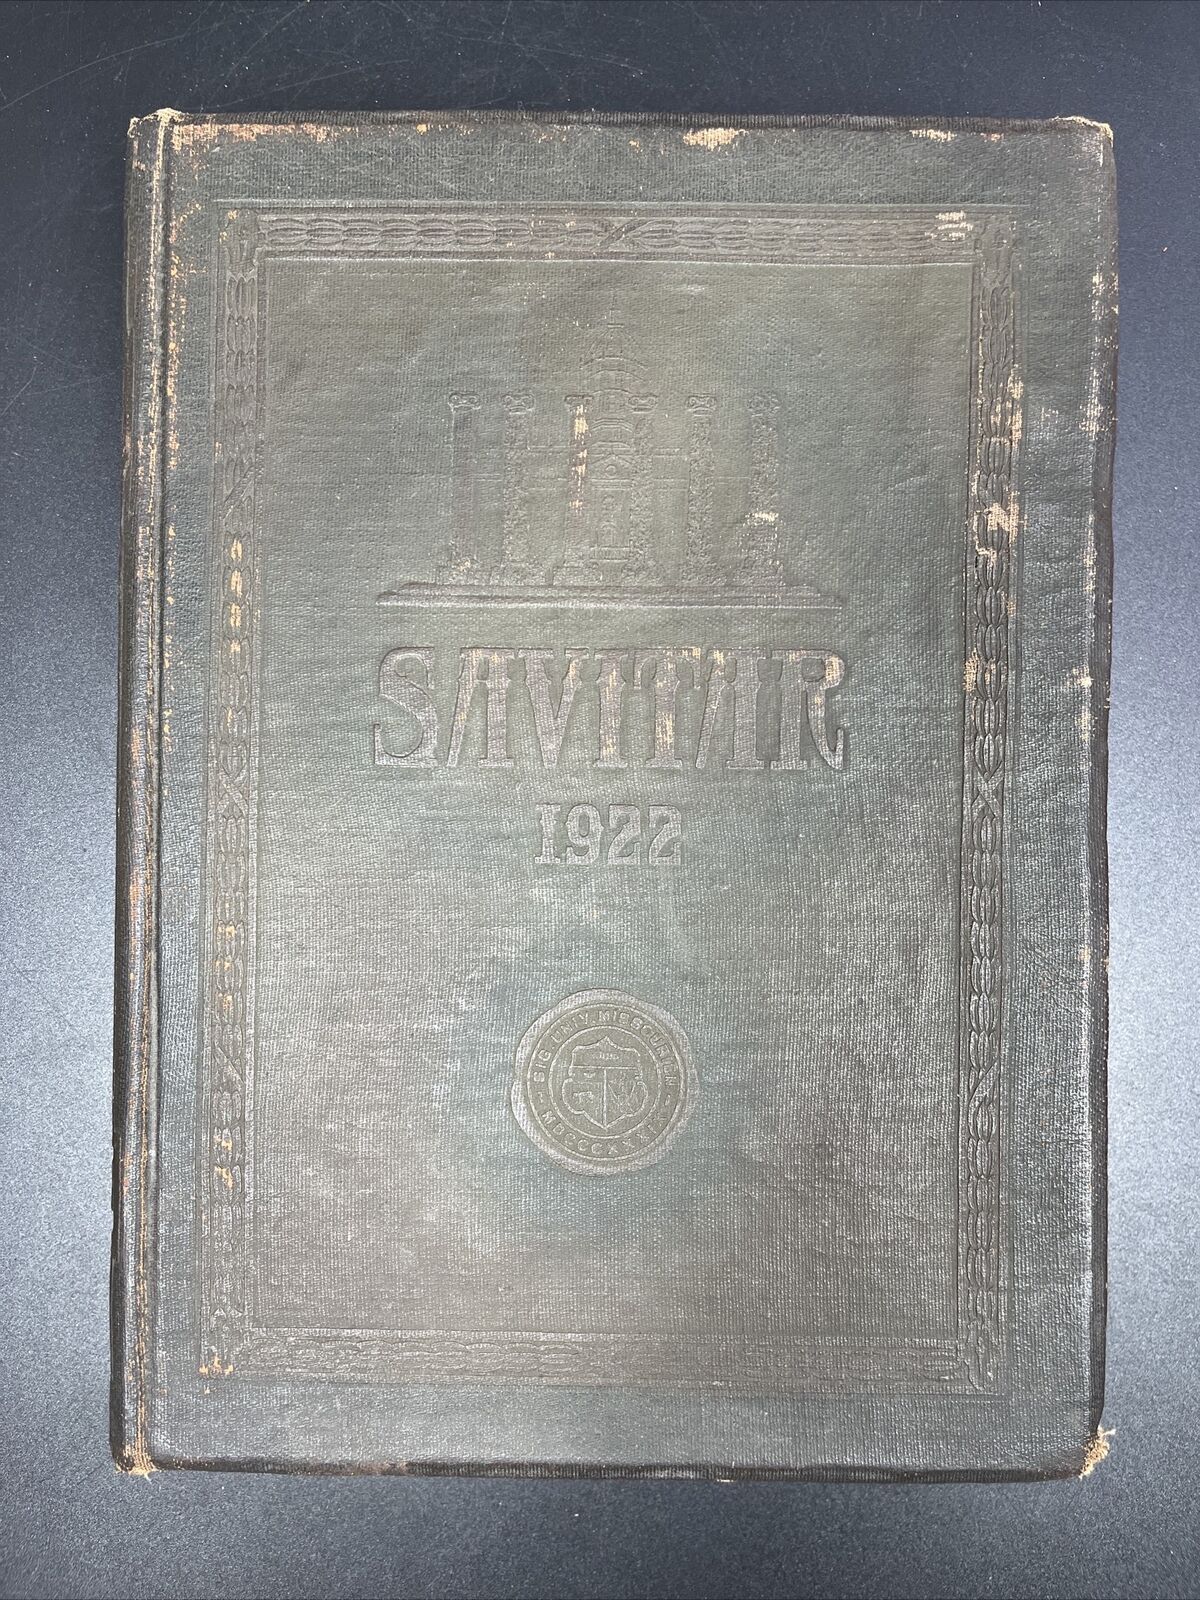 1922 University of Missouri Yearbook, The Savitar - Columbia, Mo - MIZZOU